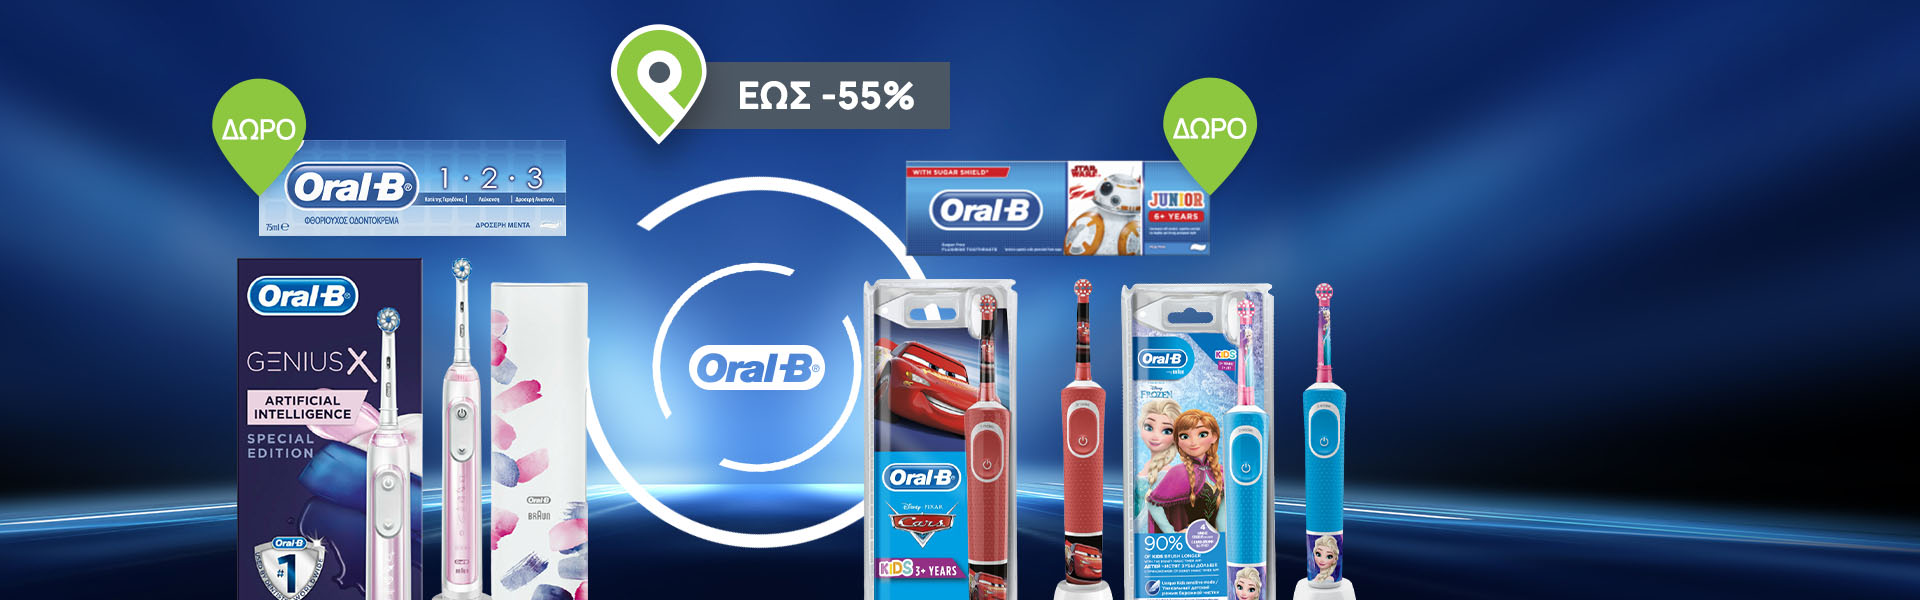 Με κάθε αγορά ηλεκτρικής οδοντόβουρτσας Oral-b ενηλίκων ή παιδική, ΔΩΡΟ μία οδοντόκρεμα ενηλίκων ή παιδική